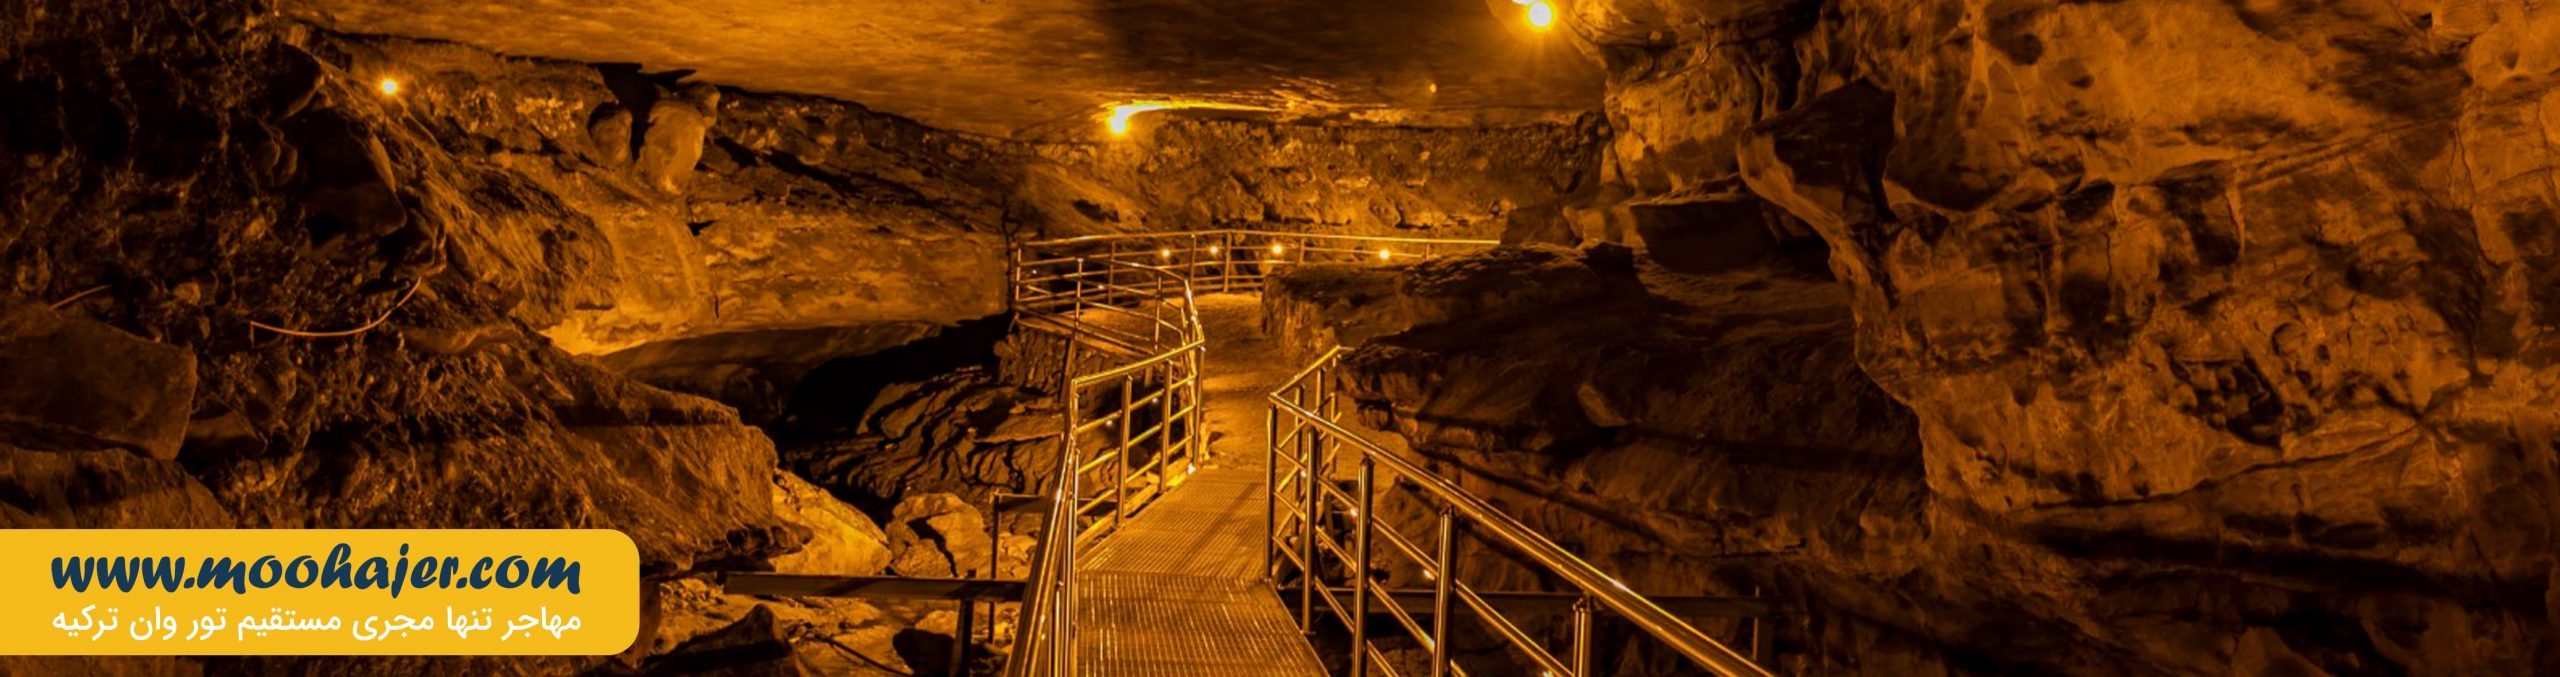 غار چال ترابزون | Çal Mağarası | تور ترابزون | مهاجر سیر ایرانیان